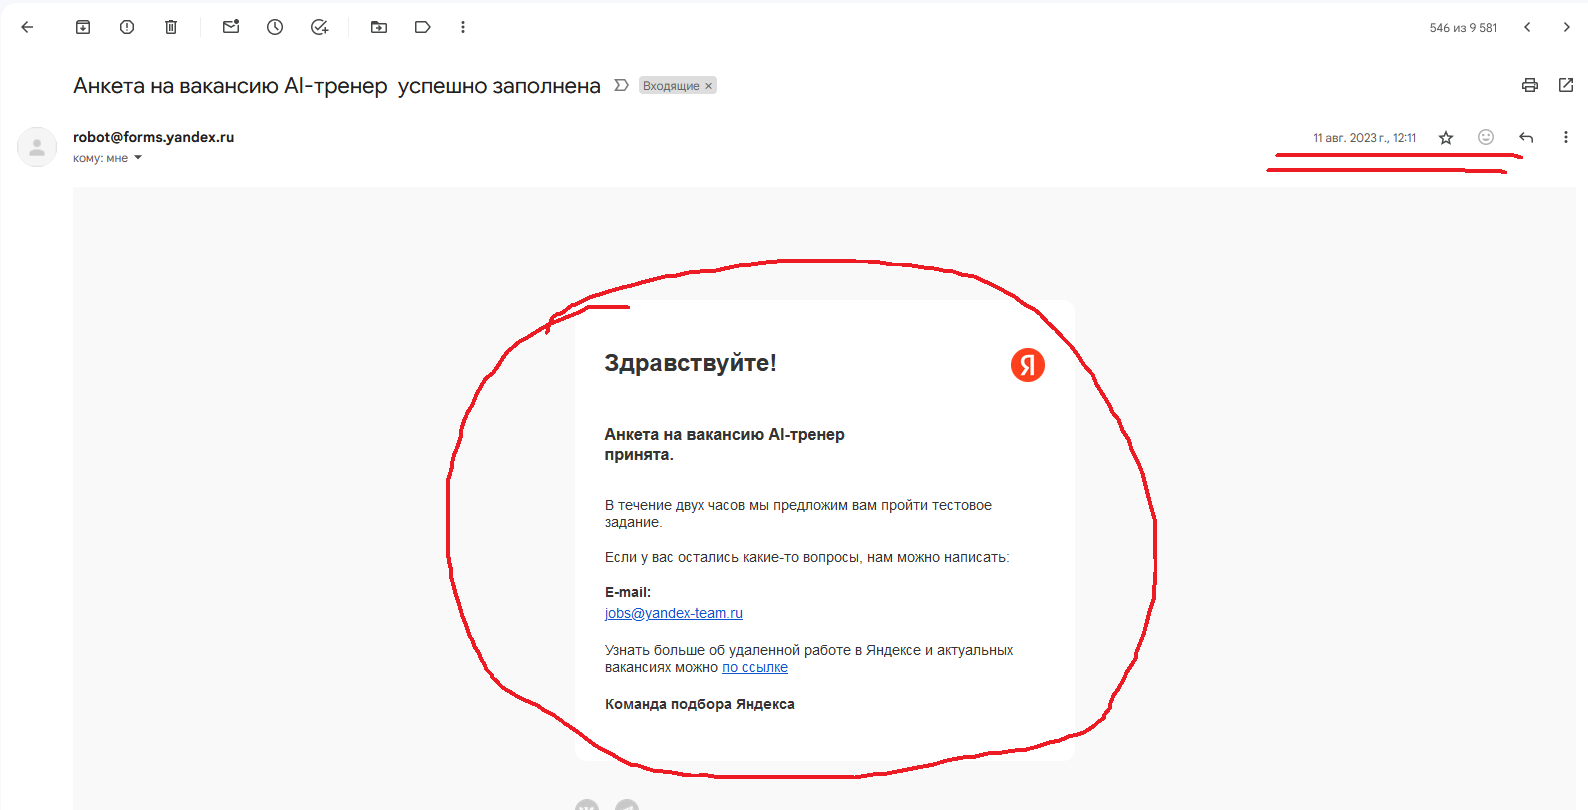 Письмо мне на почту от робота Яндекса